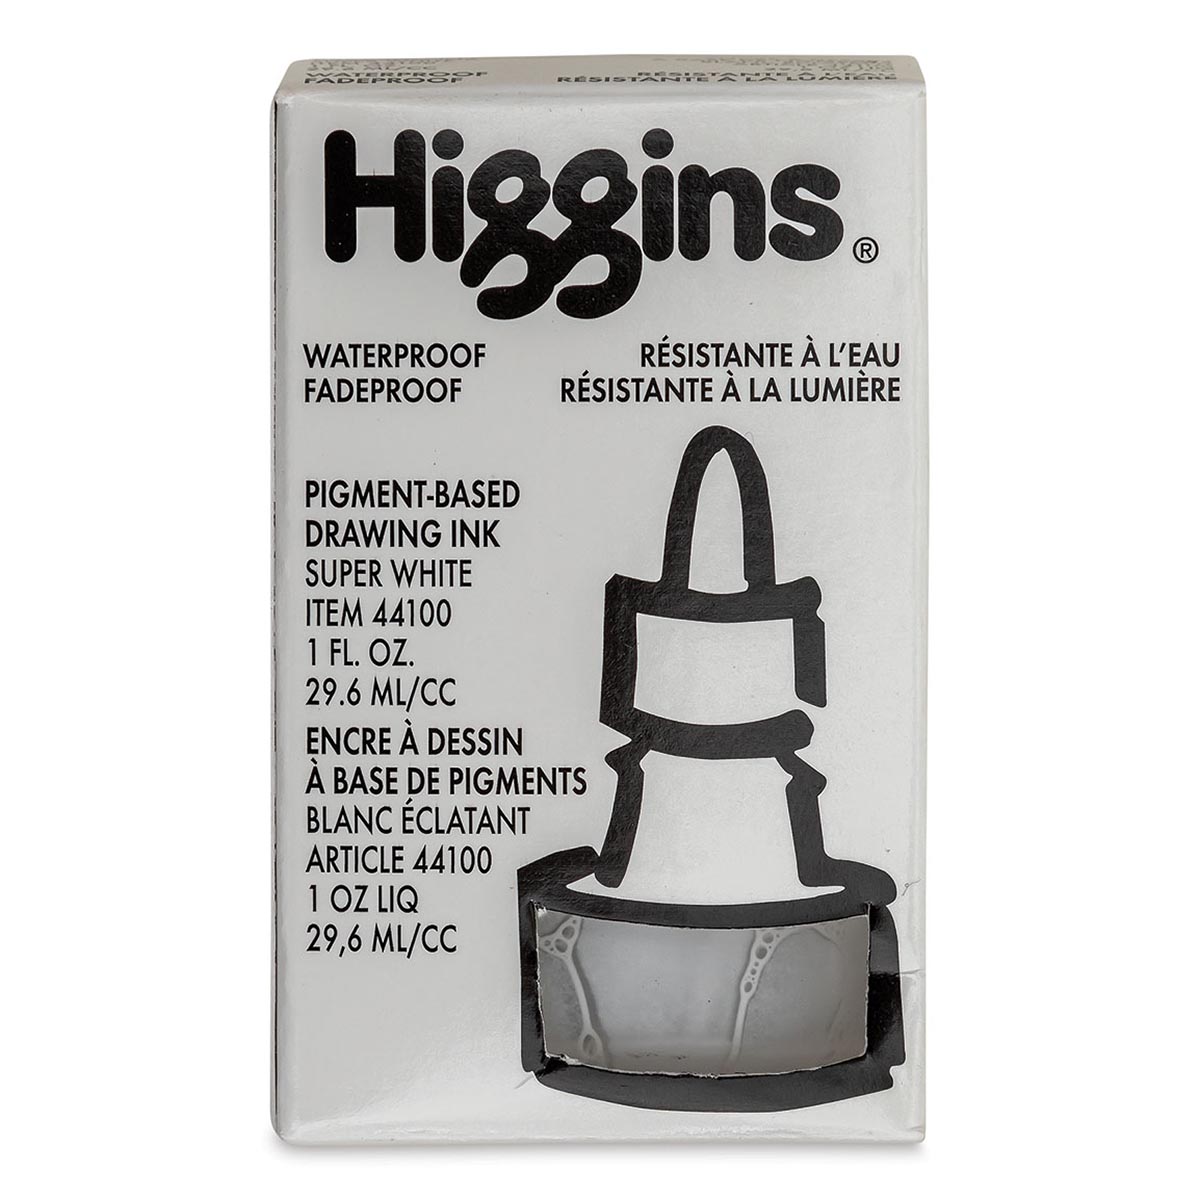 Higgins Waterproof India Ink, 16 oz. 